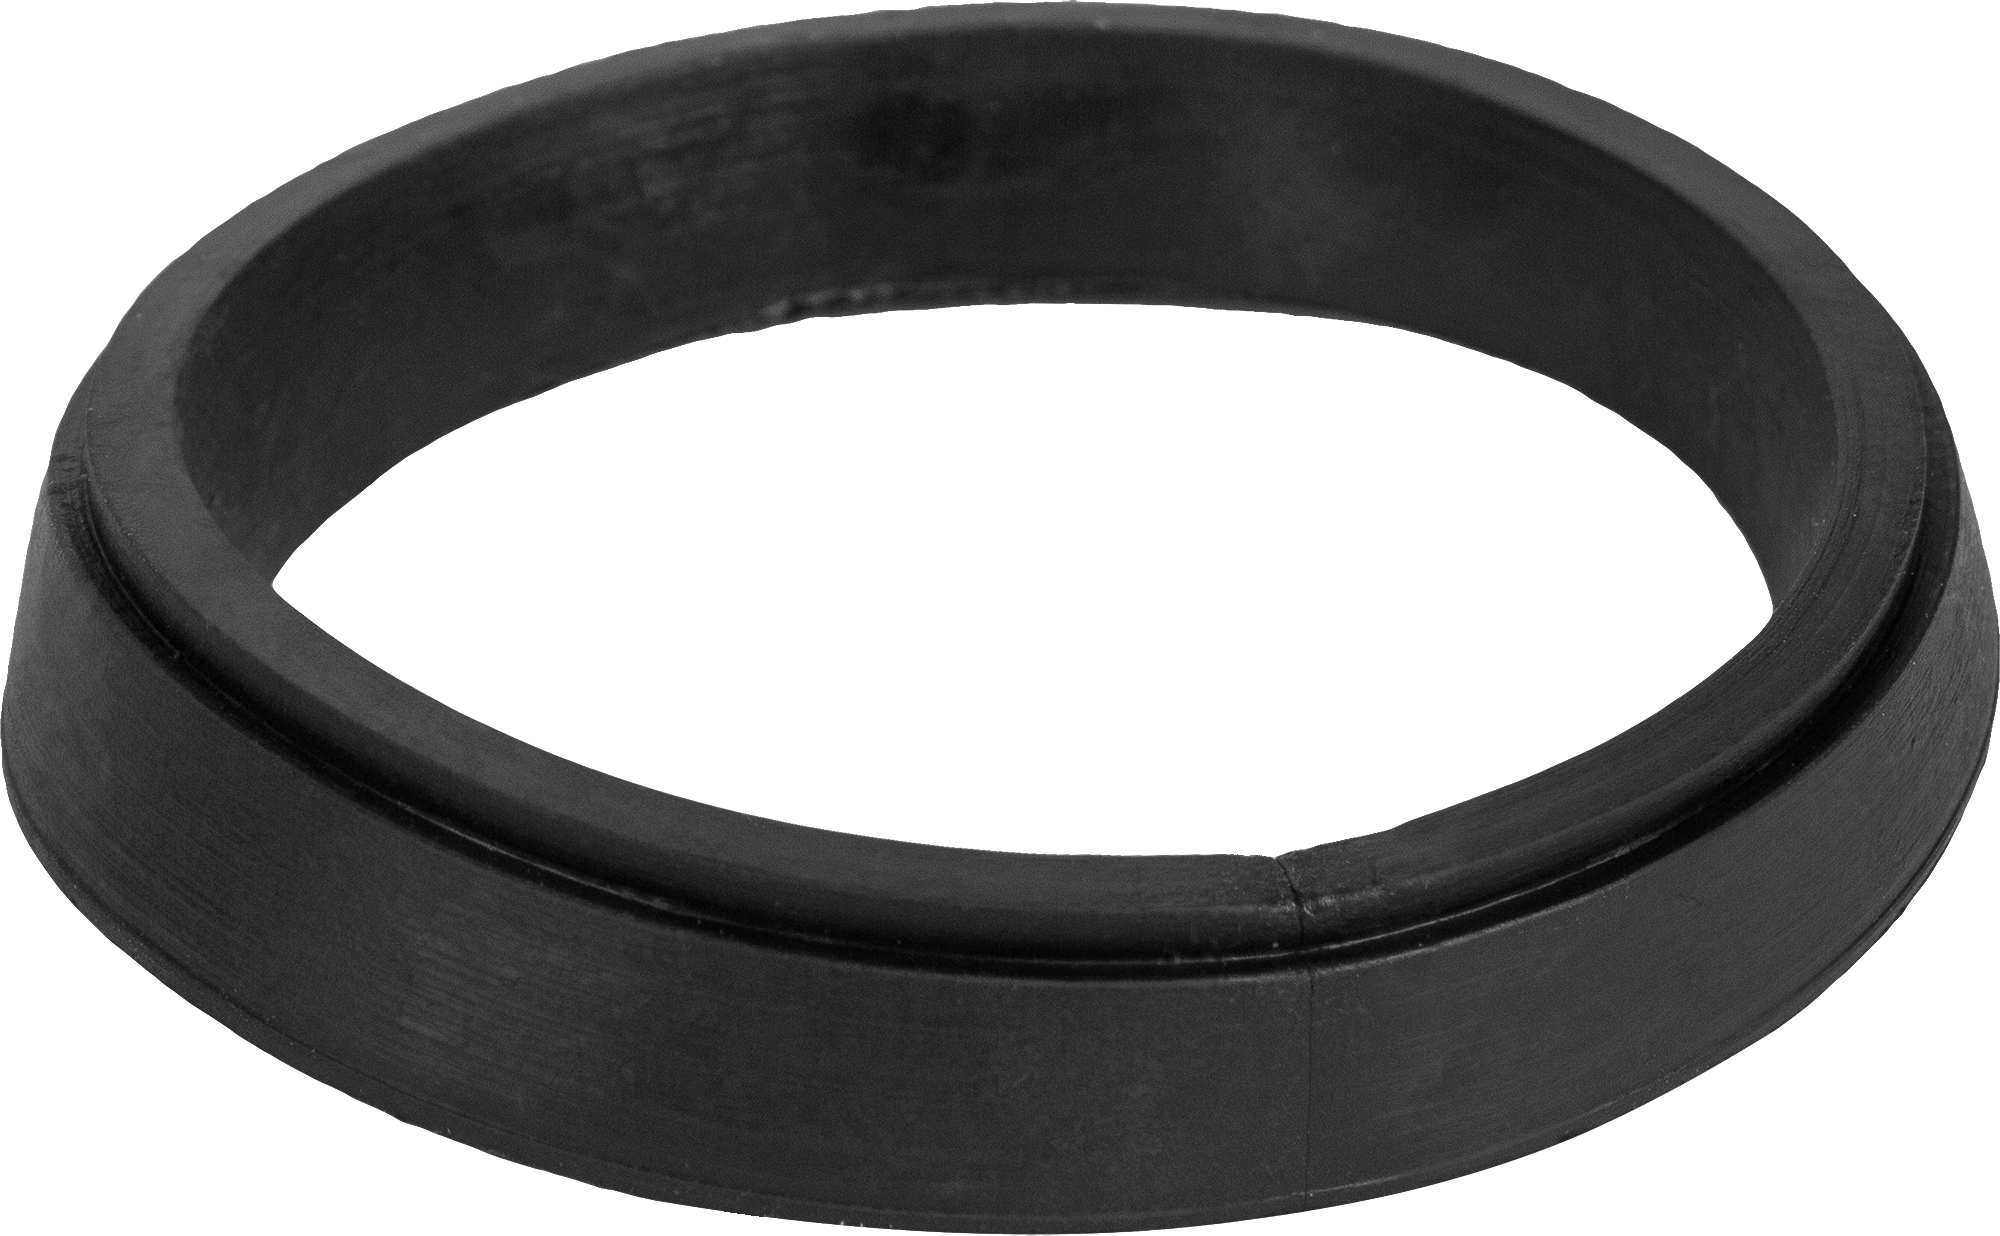  кольцо Симтек для сифона 55x65х10 мм по цене 5.1 ₽/шт .